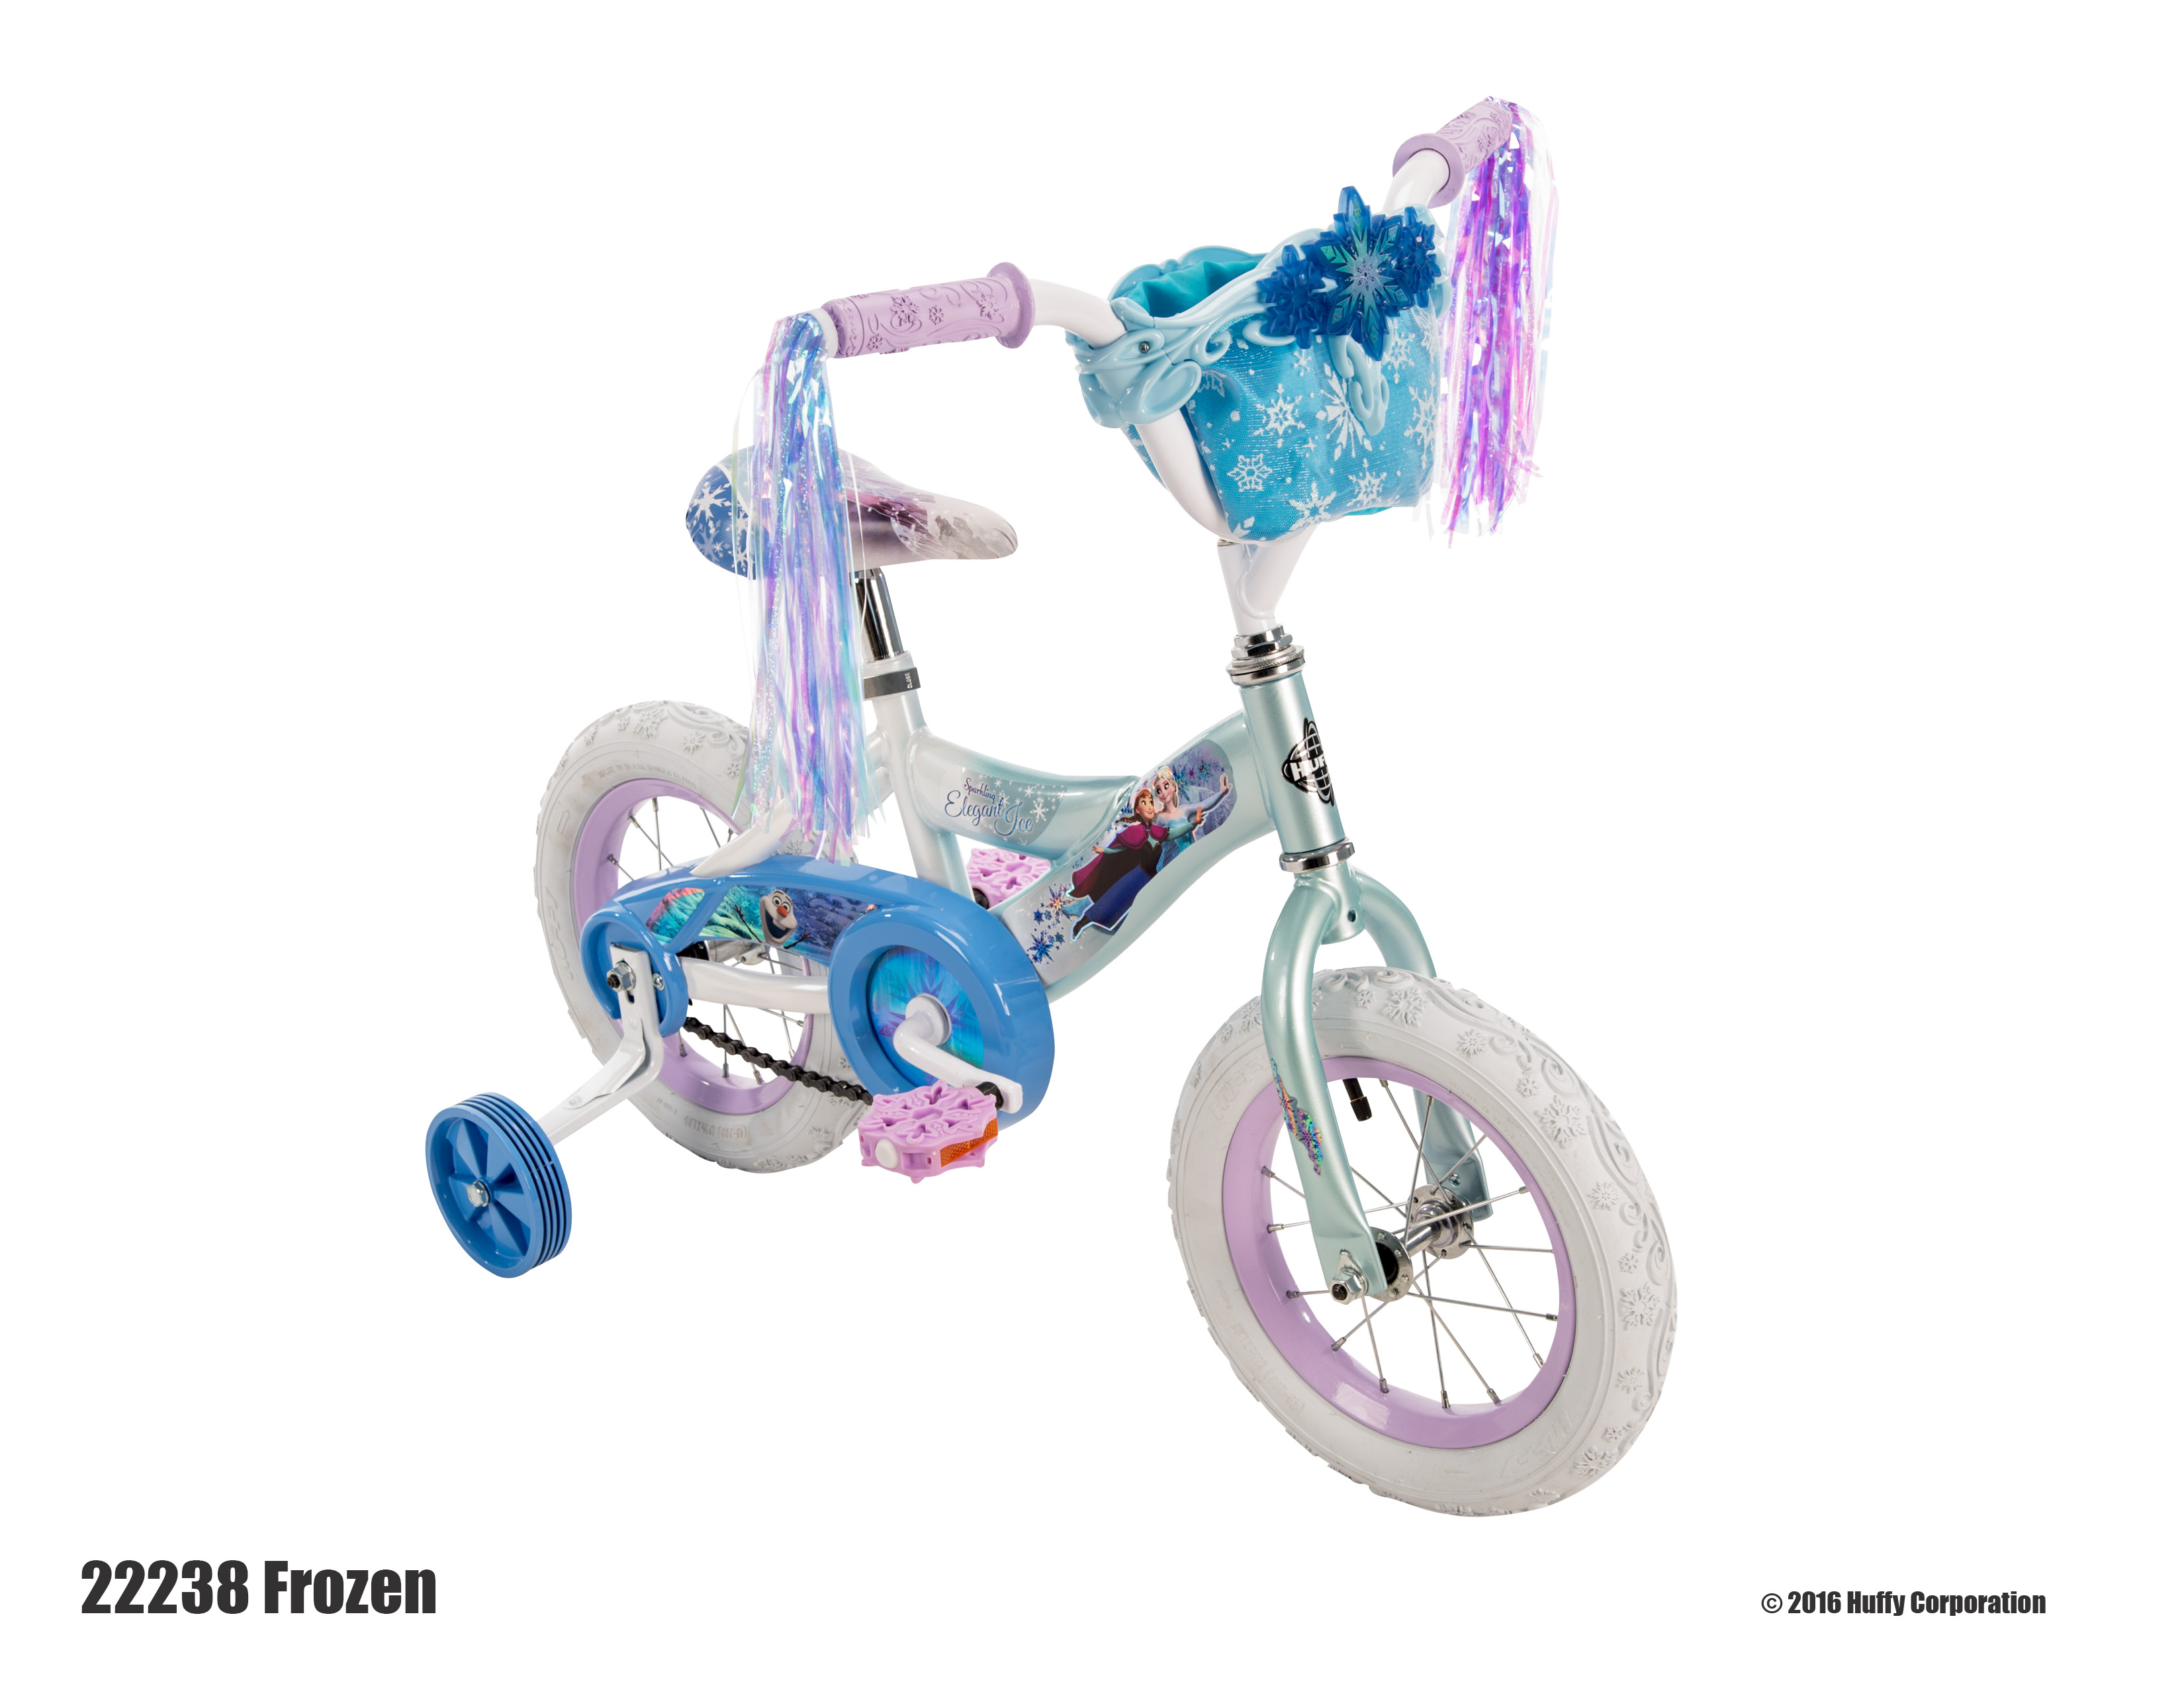 Disney Huffy 12" Frozen Bike